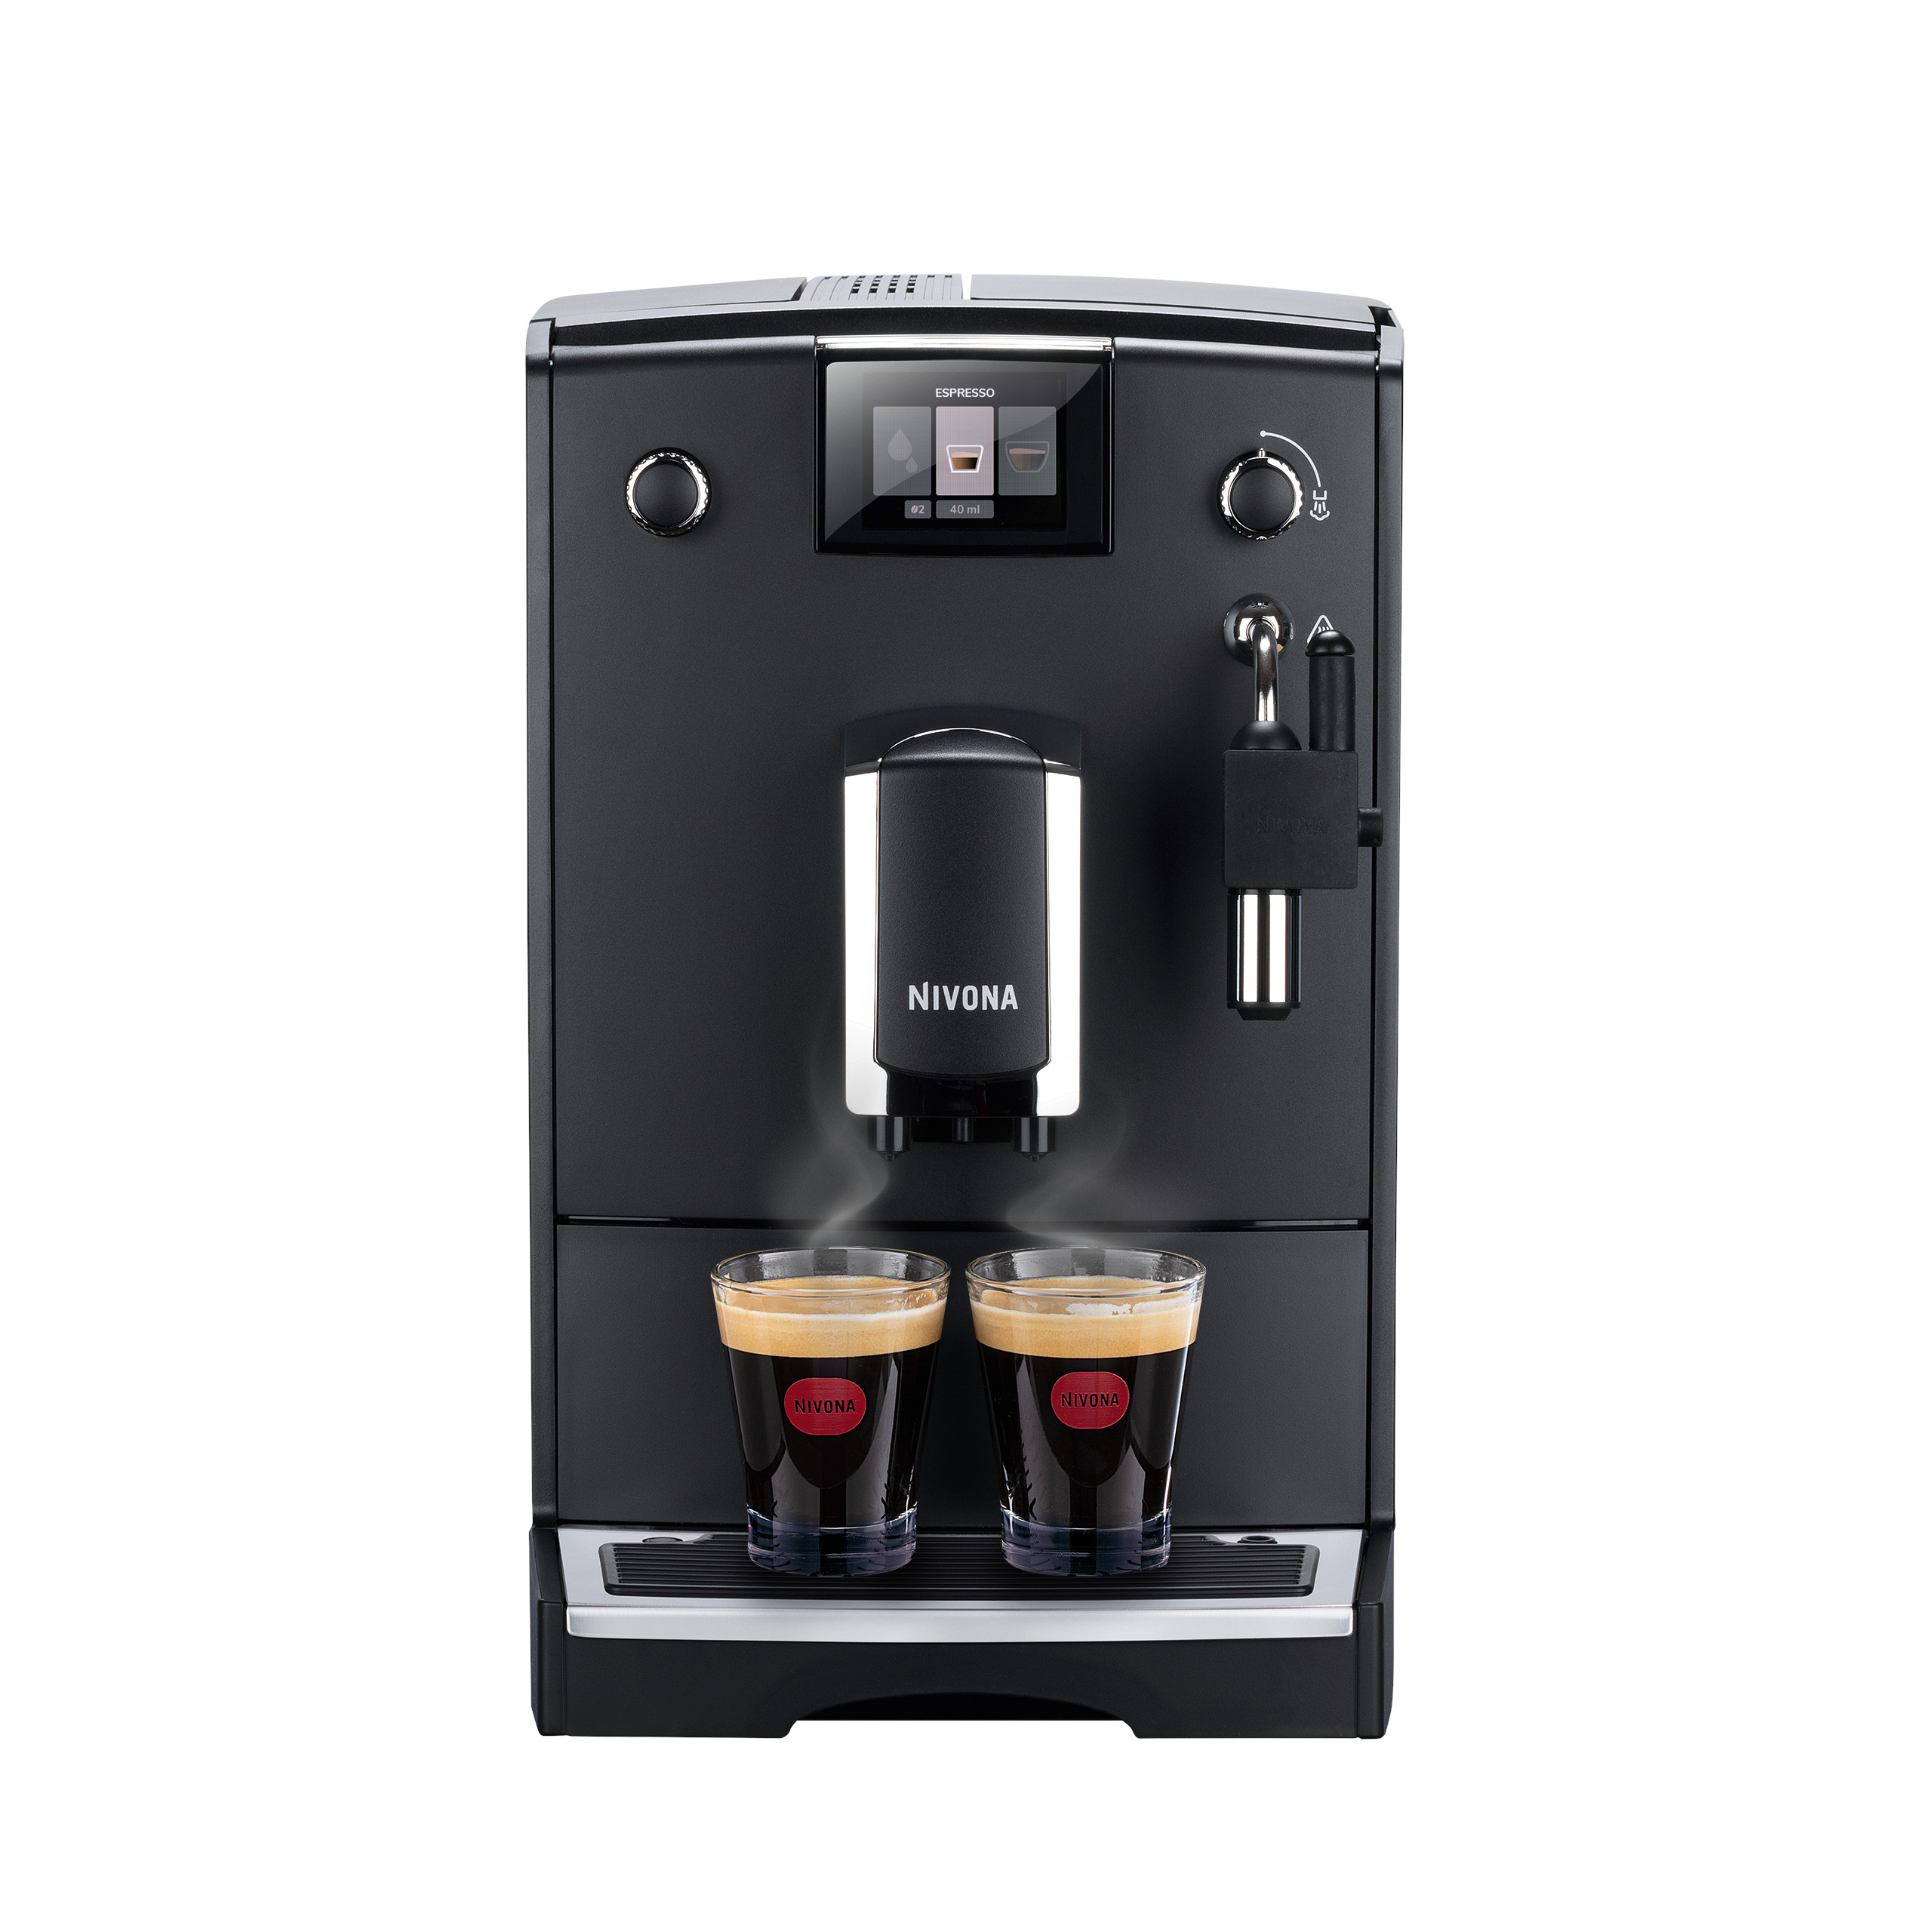 NICR 550 Cafe Romatica fully automatic espresso machine